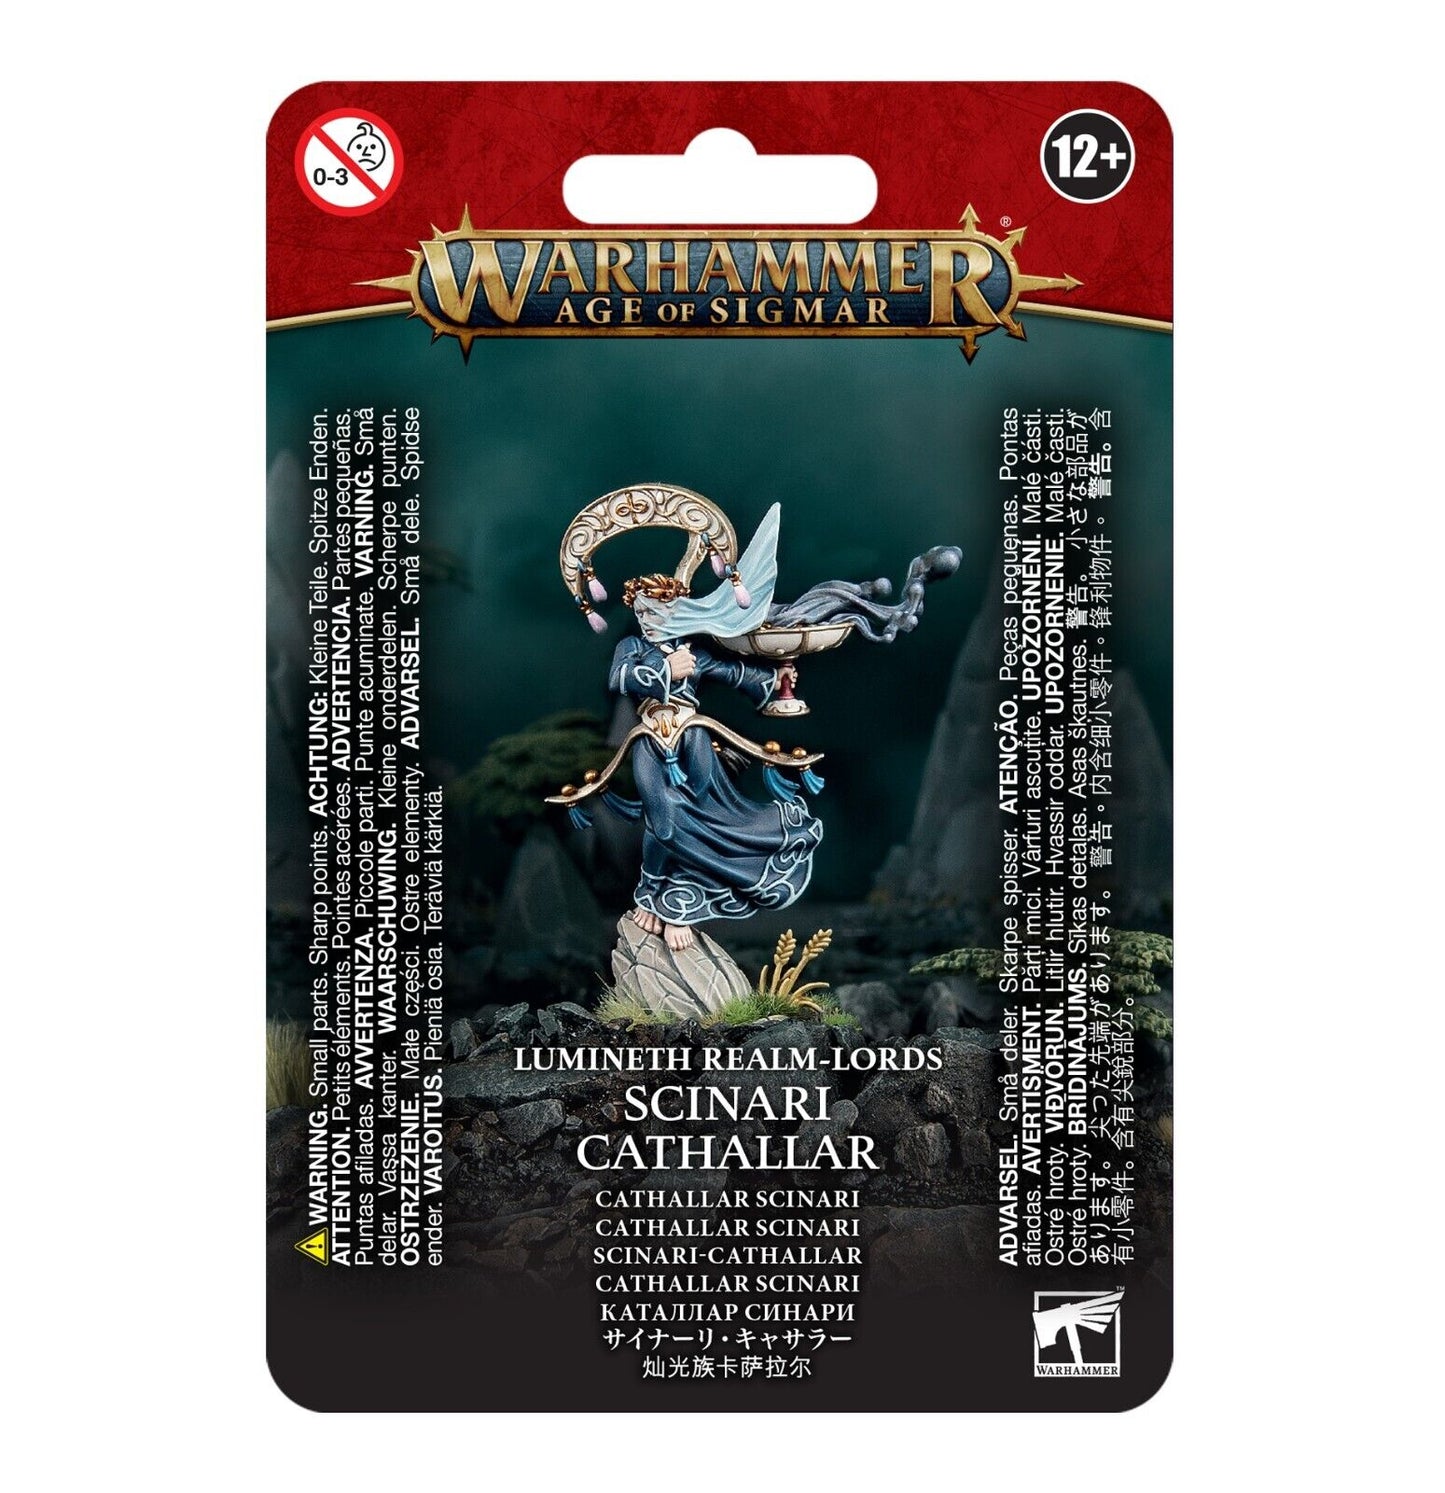 Lumineth Realm Lords Scinari Cathallar Warhammer AoS NIB!                WBGames